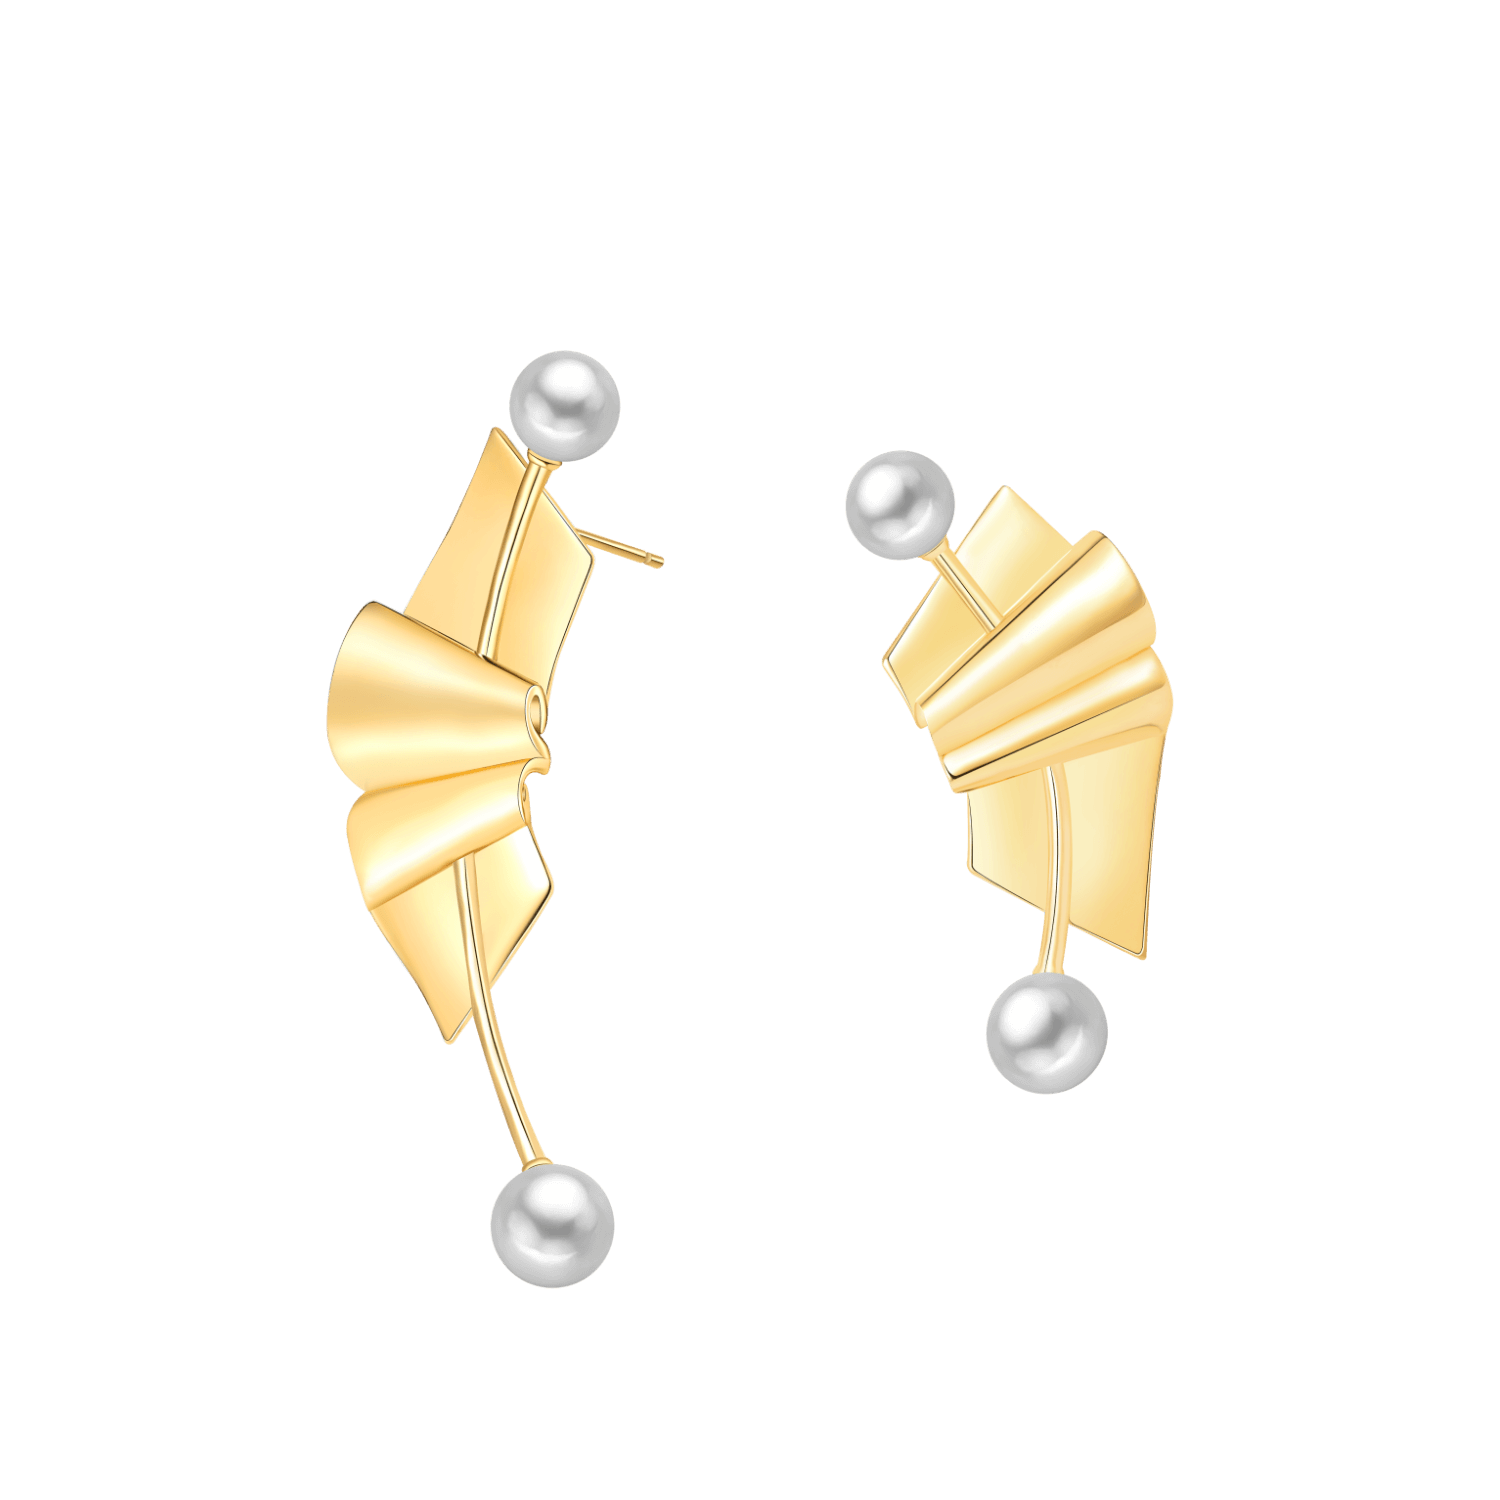 Folding Paper Asymmetric Earrings